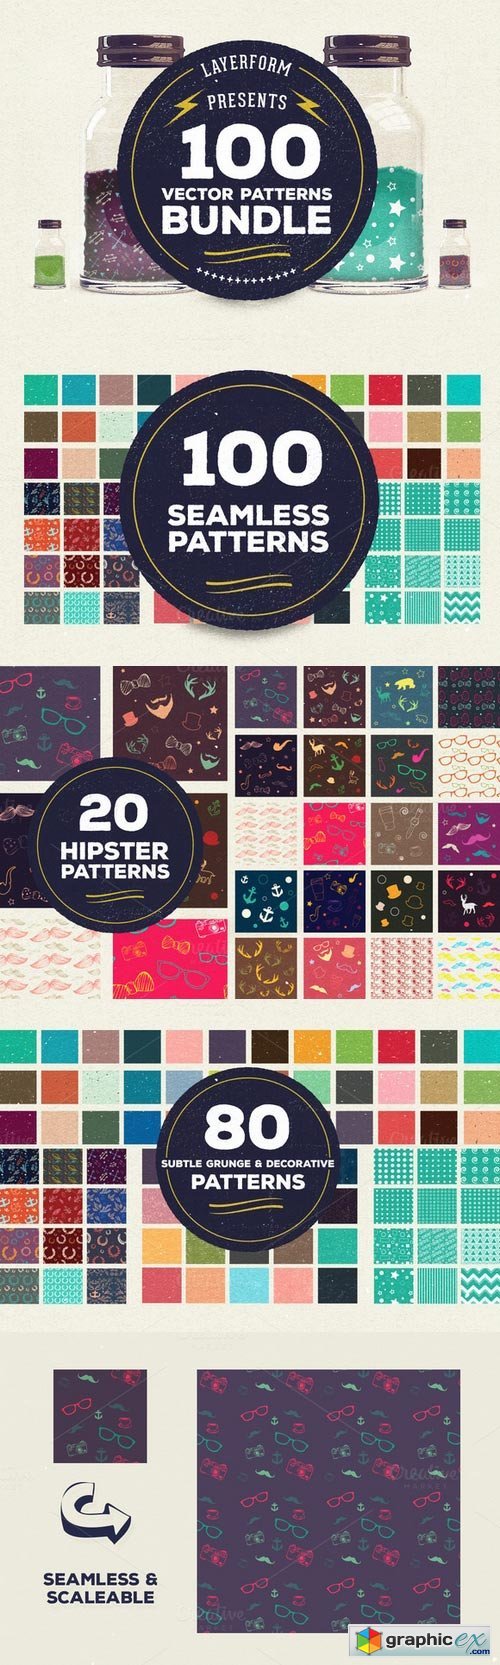 100 Vector Patterns Bundle